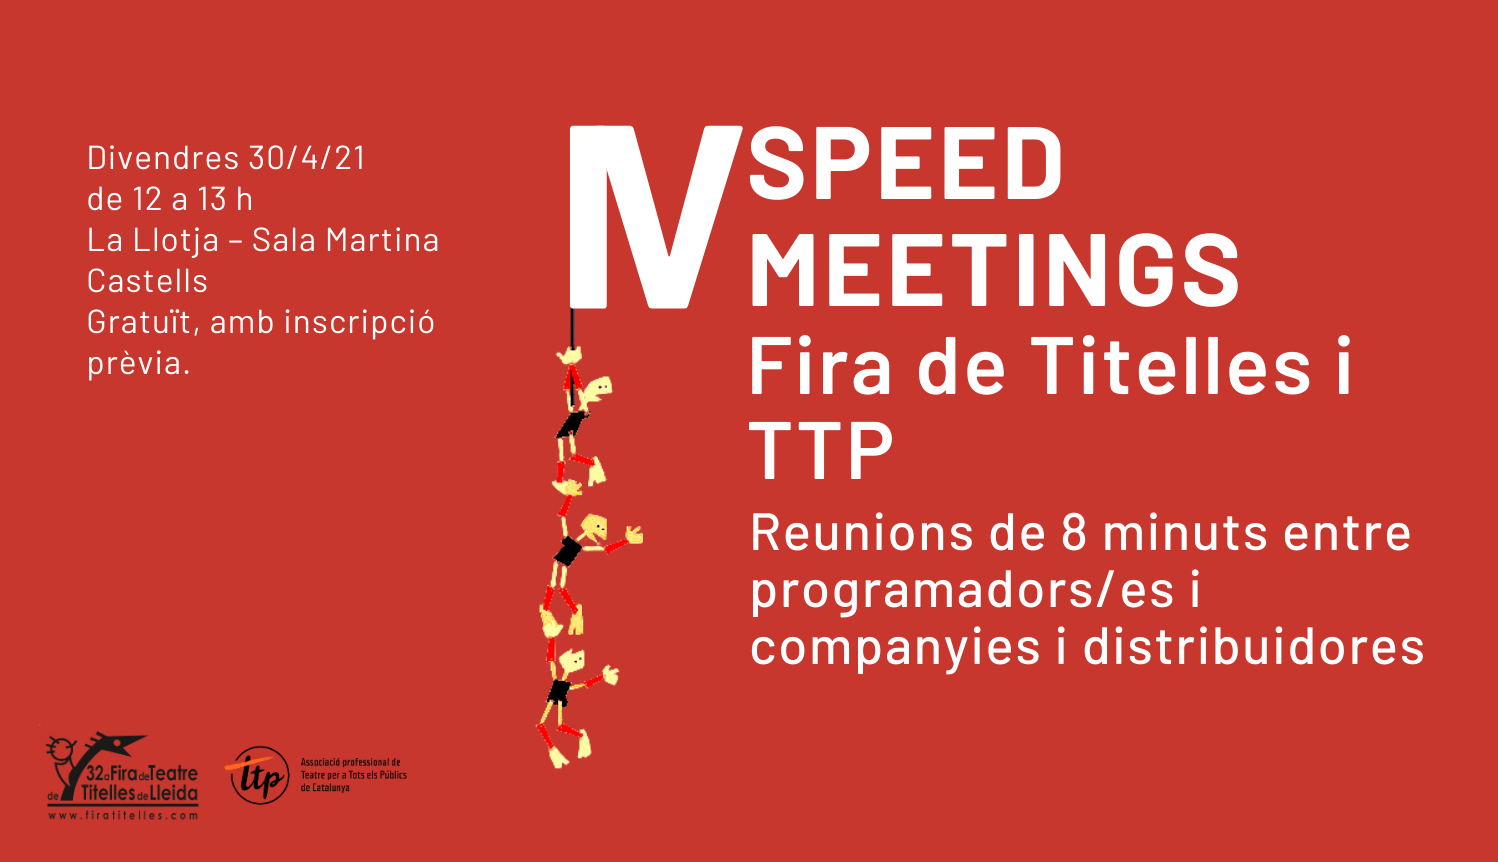 Abierta la convocatoria para participar a los IV Speed Meetings a la Fira de Titelles de Lleida.